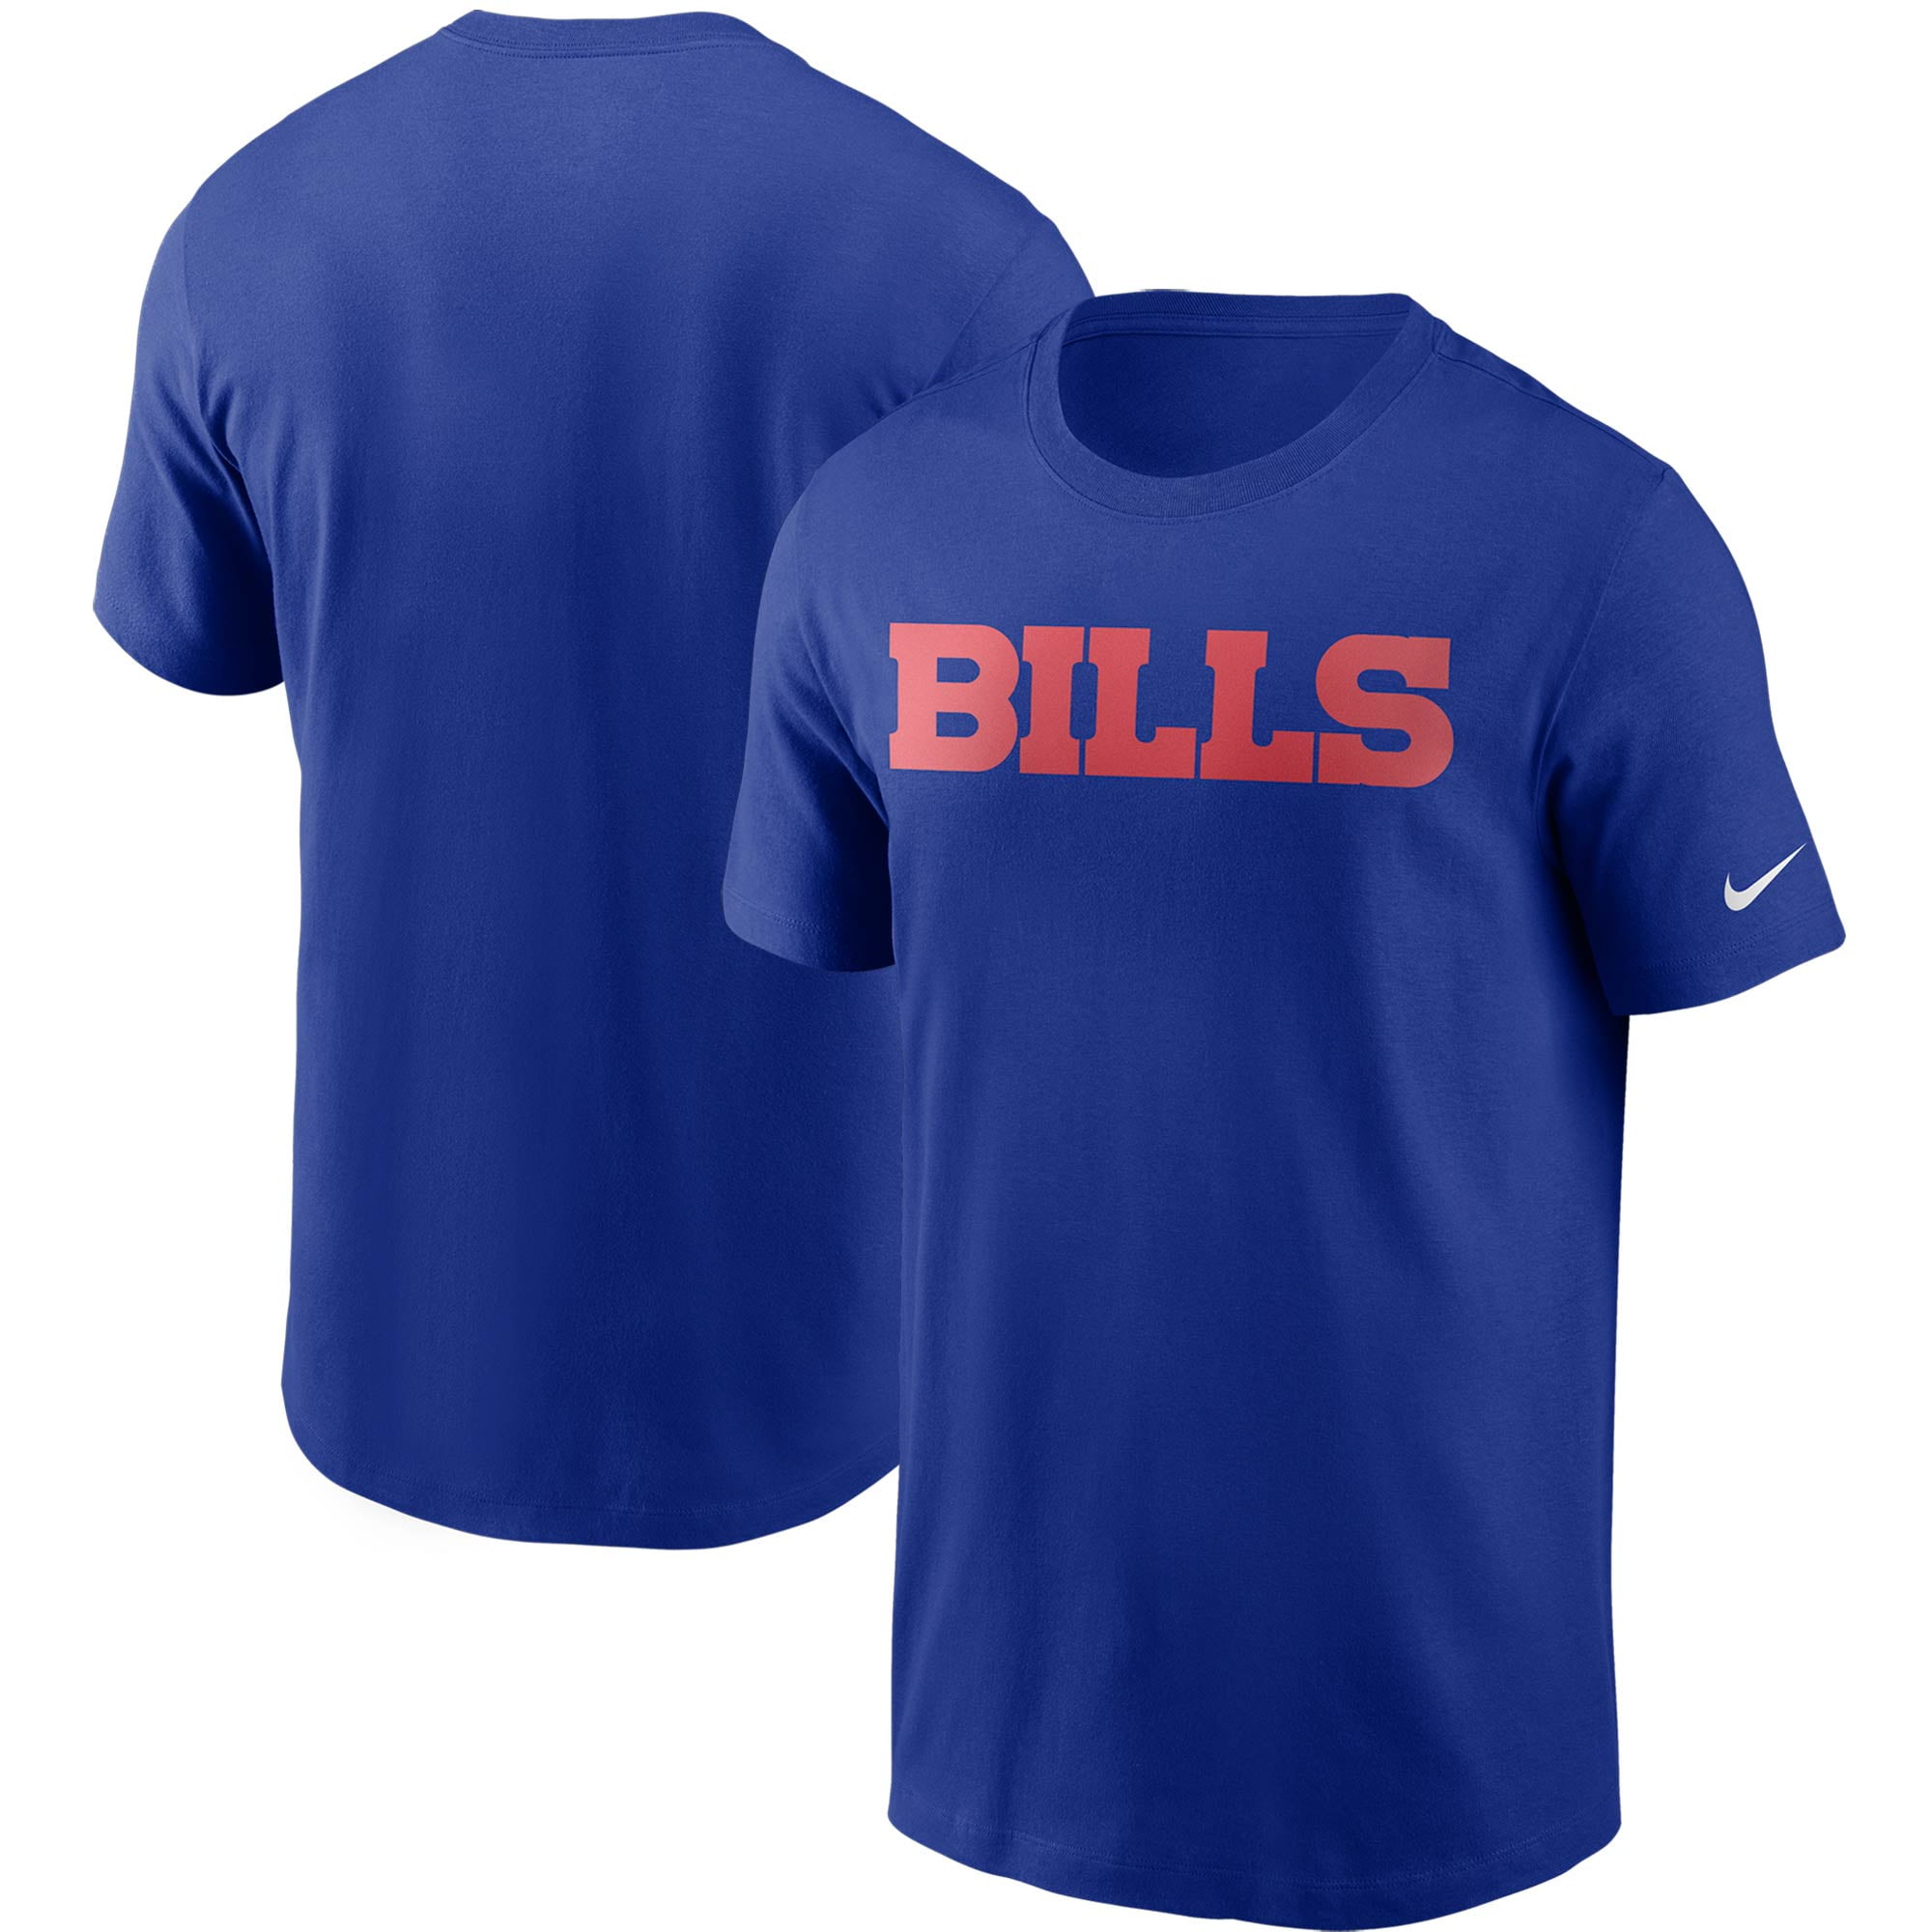 buffalo sports shirts